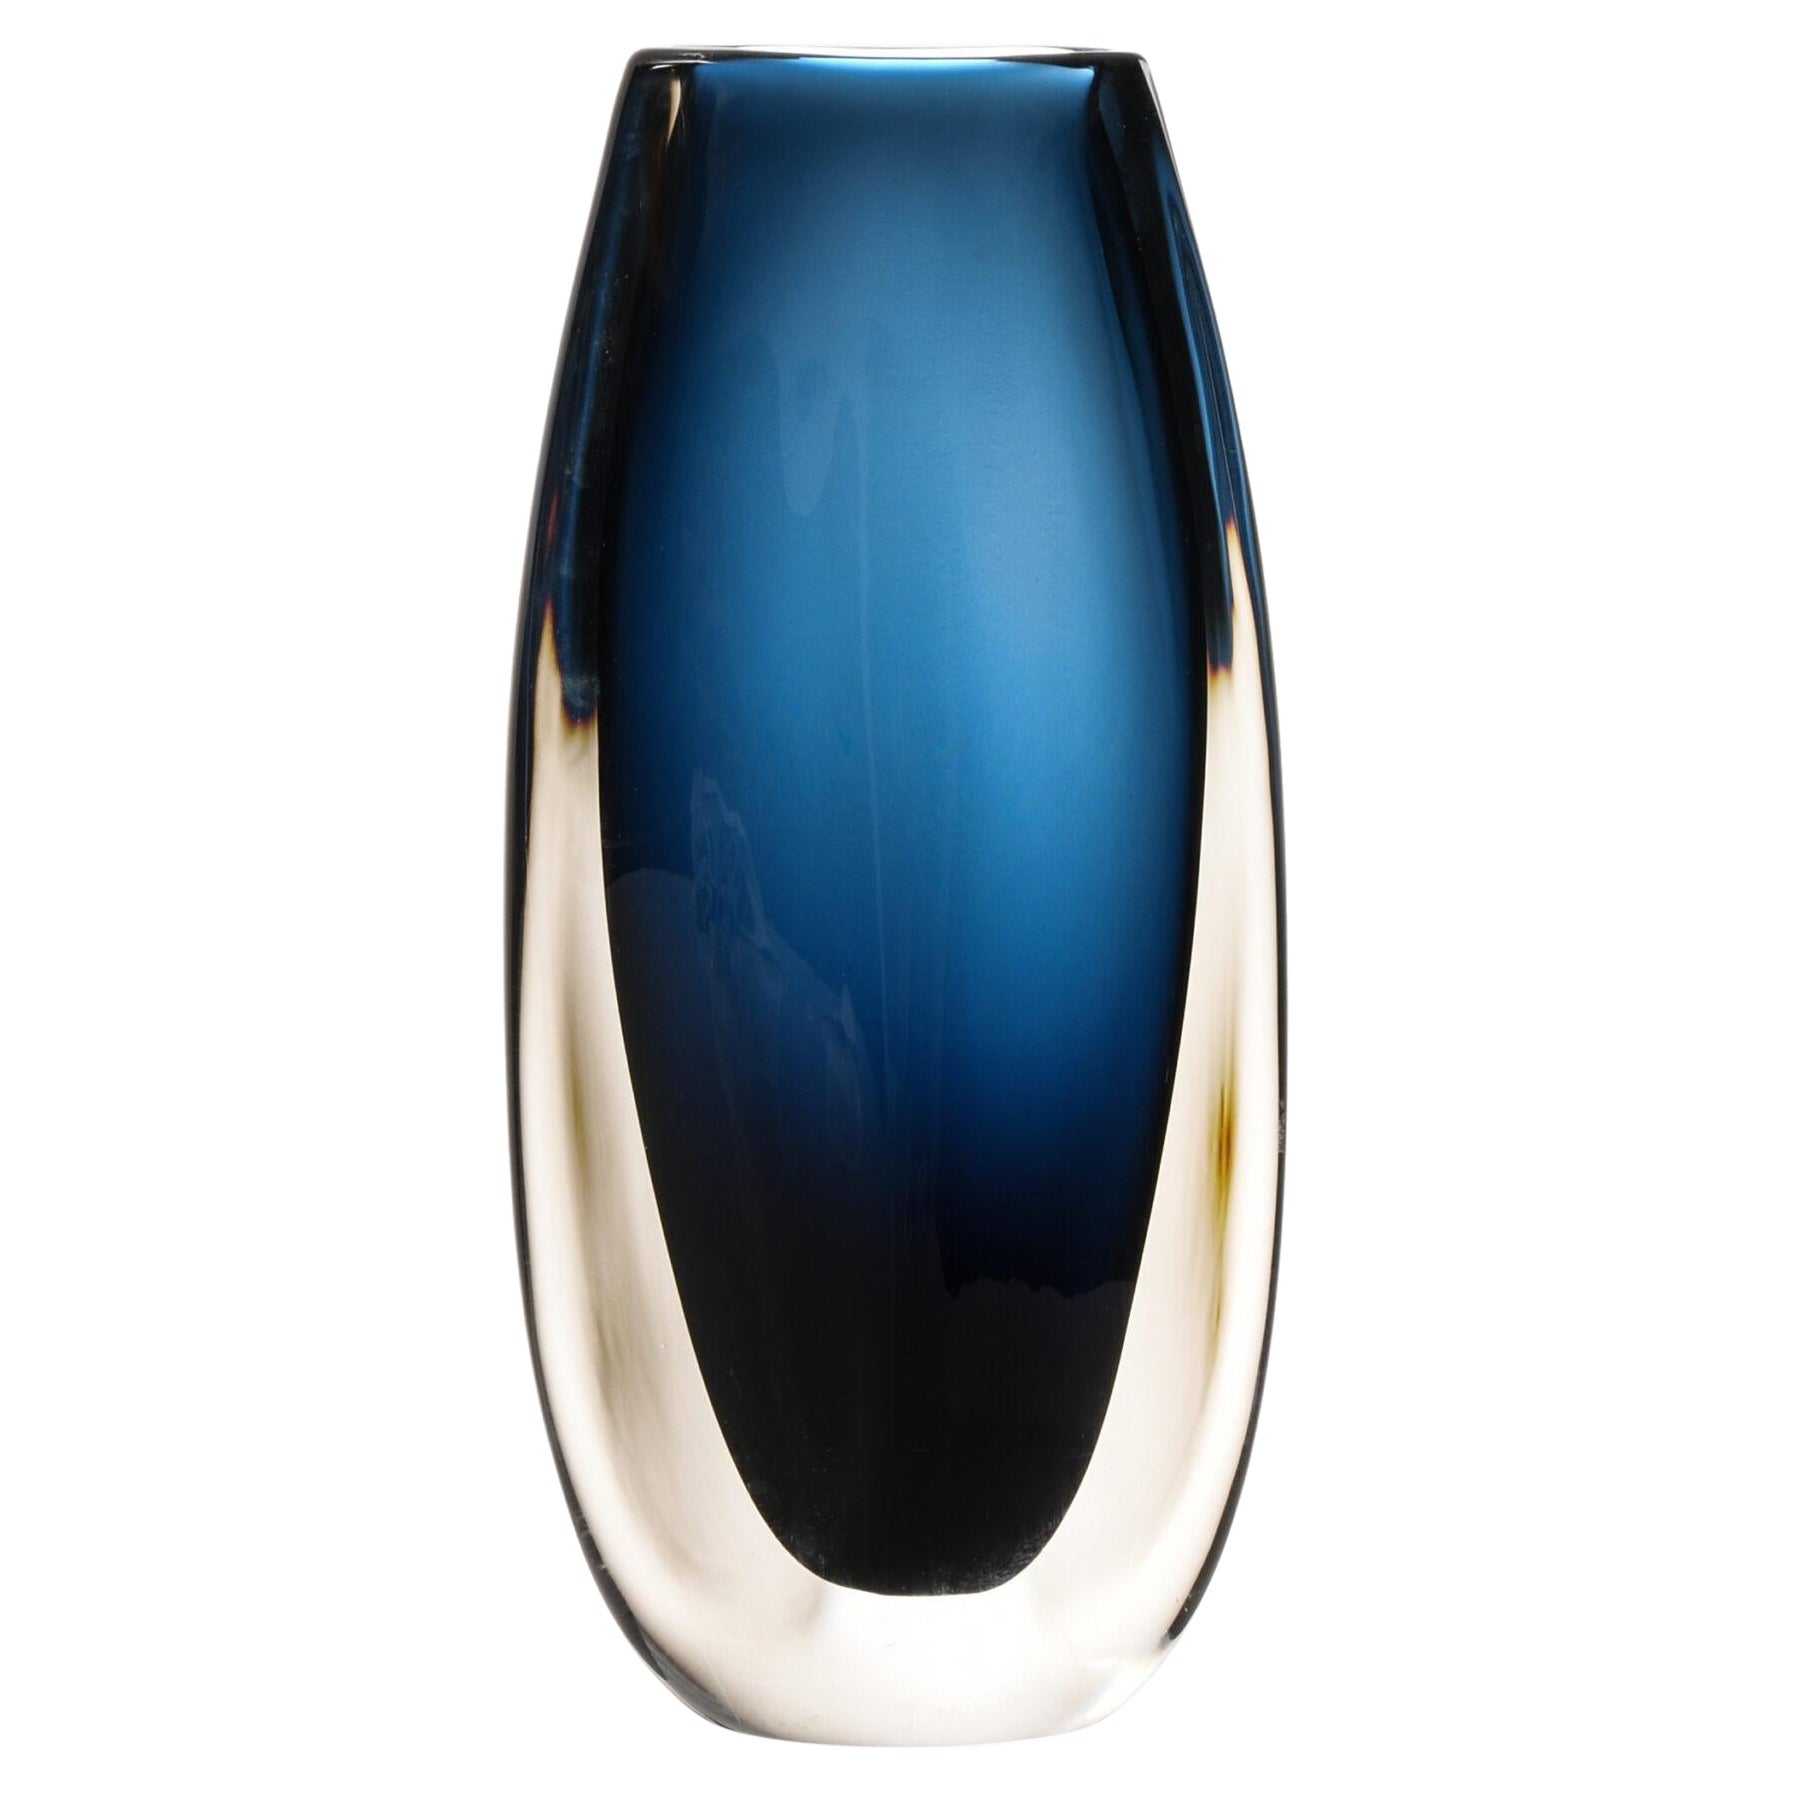 Nils Landberg Vase, hergestellt von Orrefors in Schweden